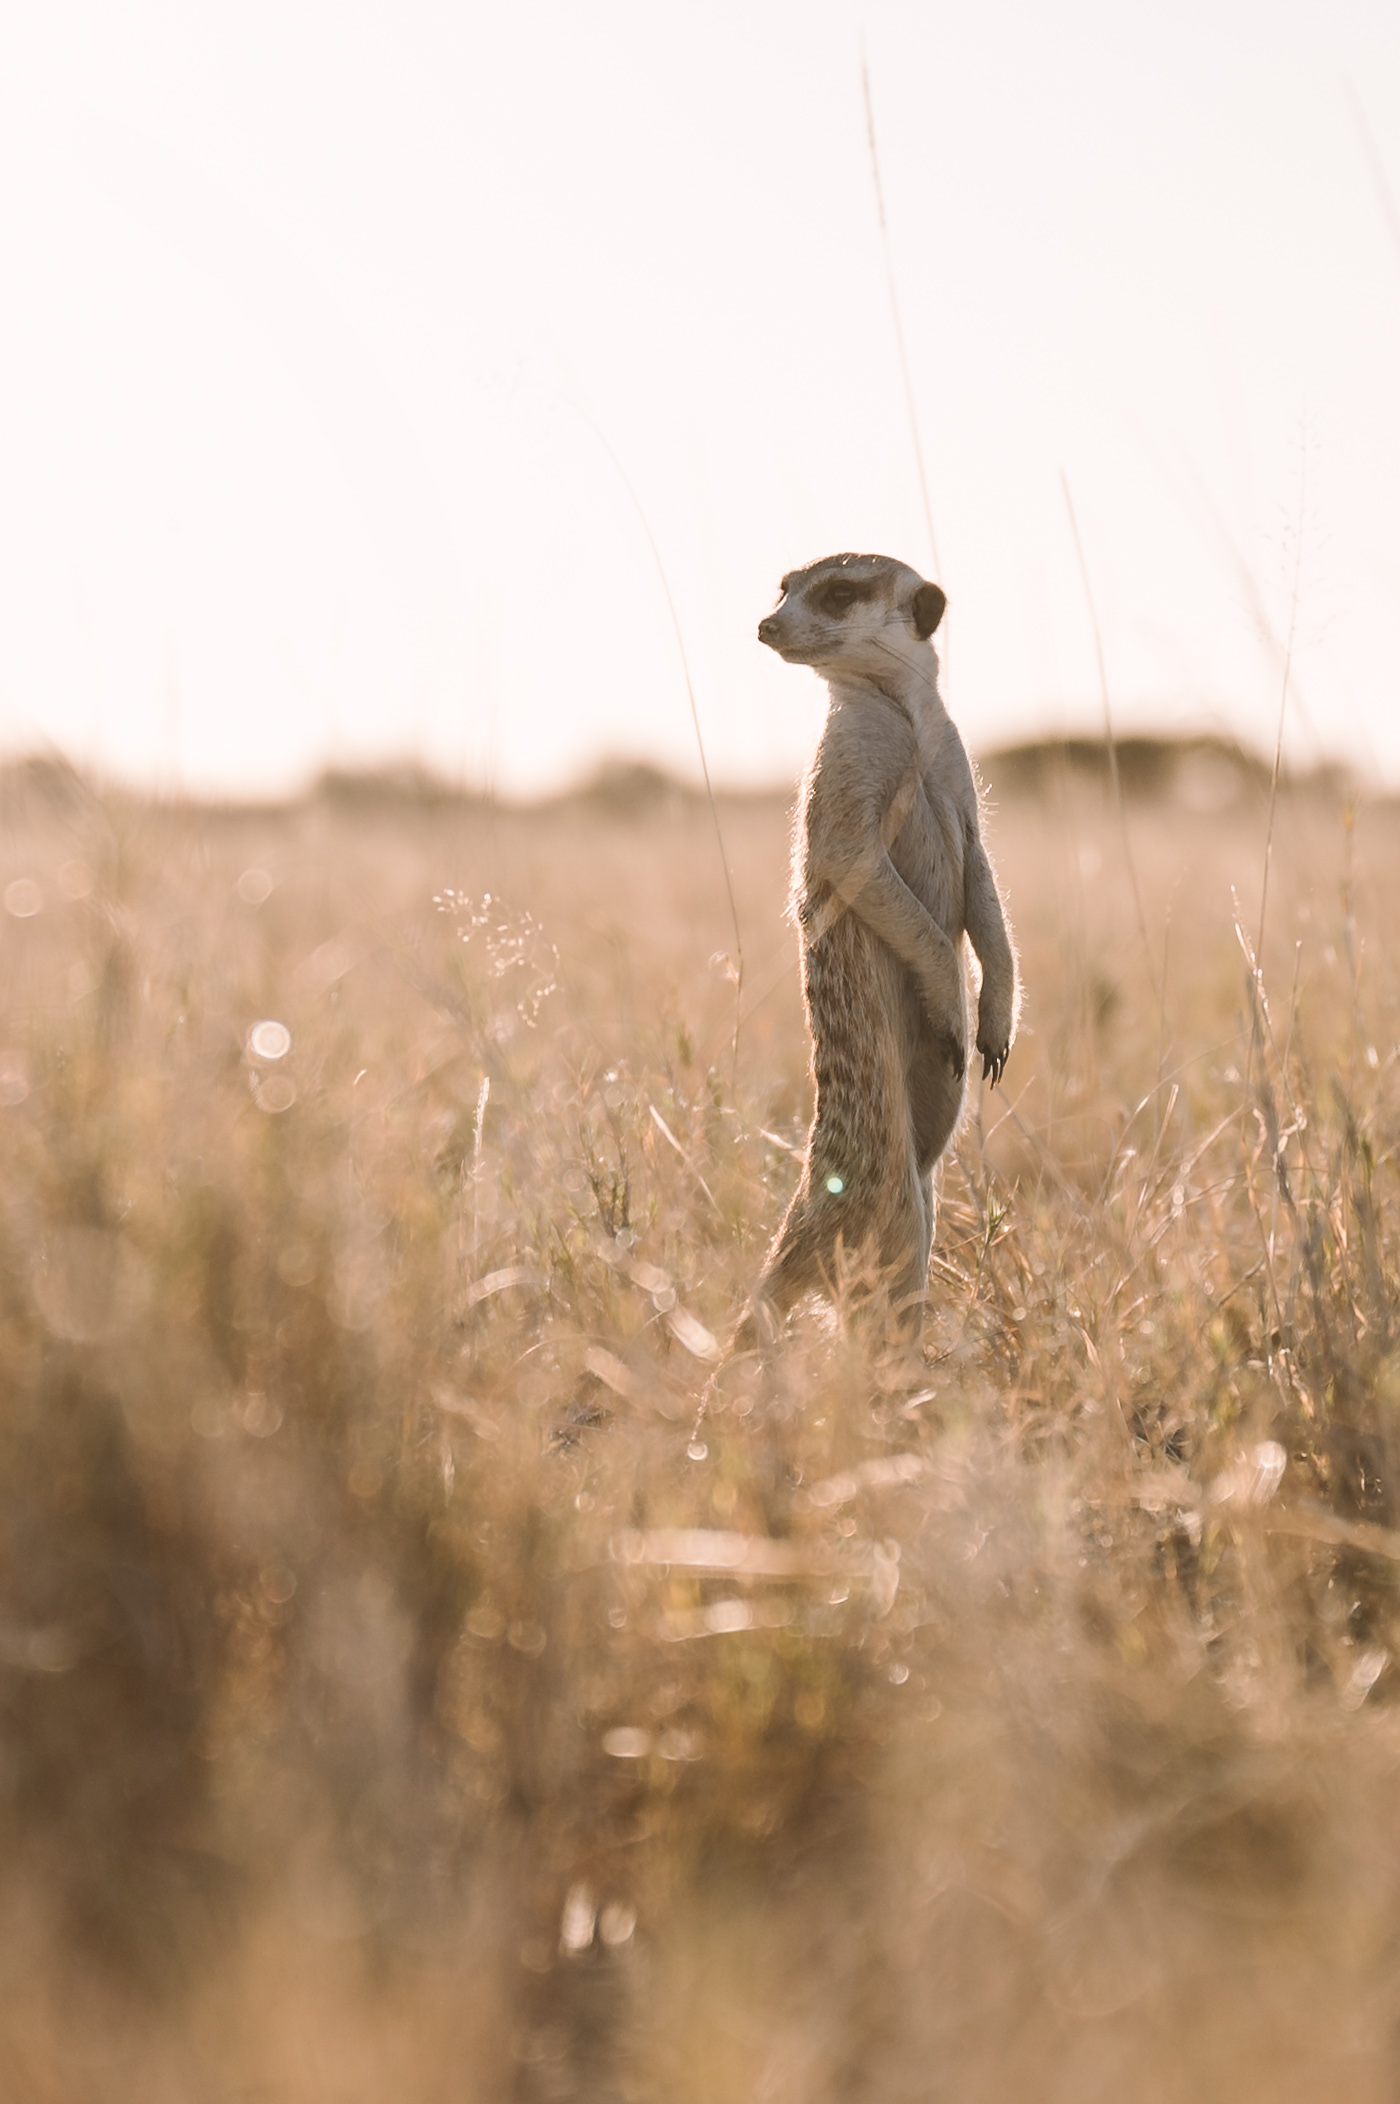 A meerkat in the Makgadikgadi in Botswana